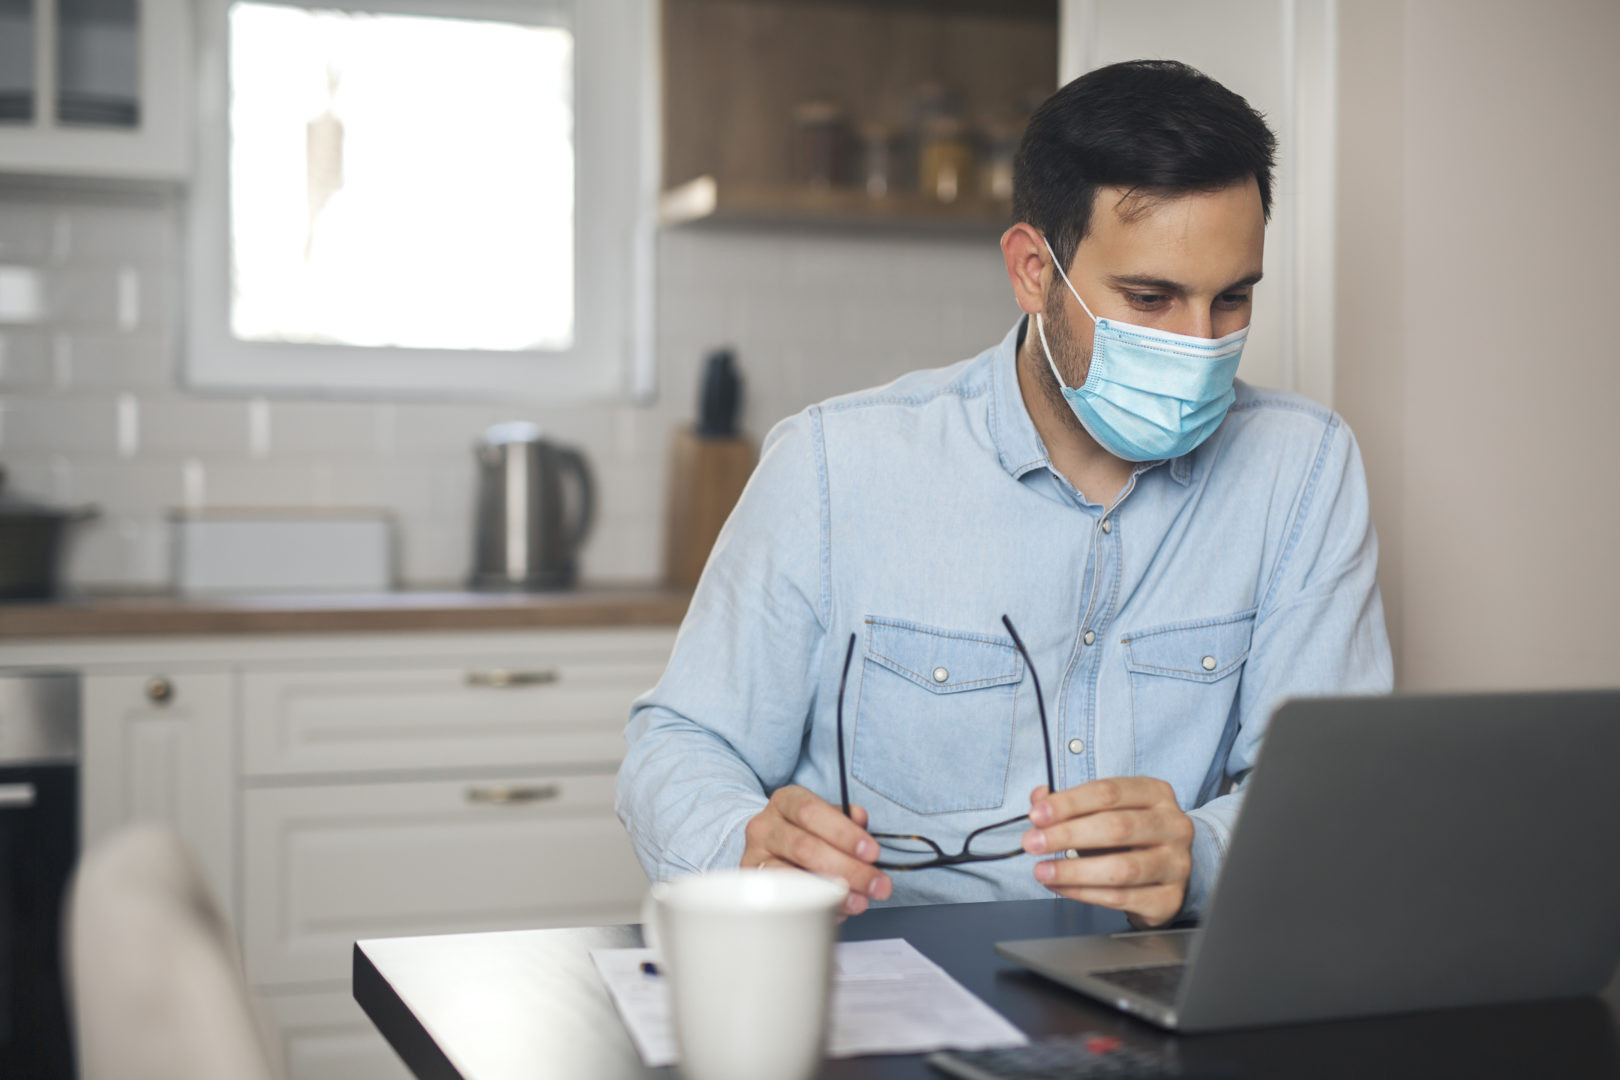 Man wearing mask due to virus pandemic.